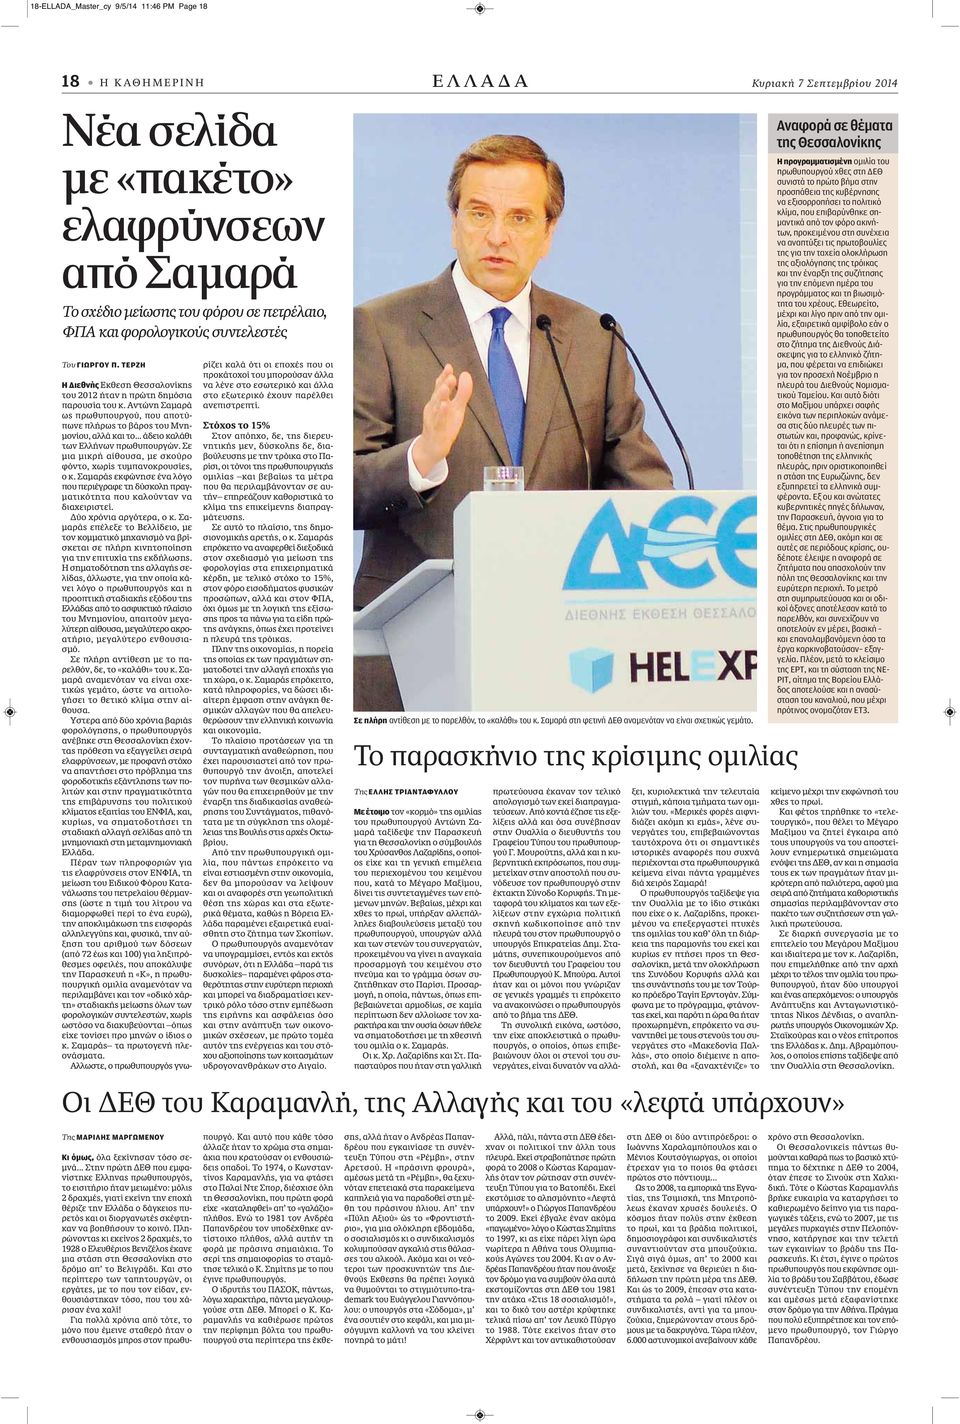 Αντώνη Σαμαρά ως πρωθυπουργού, που αποτύπωνε πλήρως το βάρος του Μνημονίου, αλλά και το... άδειο καλάθι των Ελλήνων πρωθυπουργών. Σε μια μικρή αίθουσα, με σκούρο φόντο, χωρίς τυμπανοκρουσίες, ο κ.